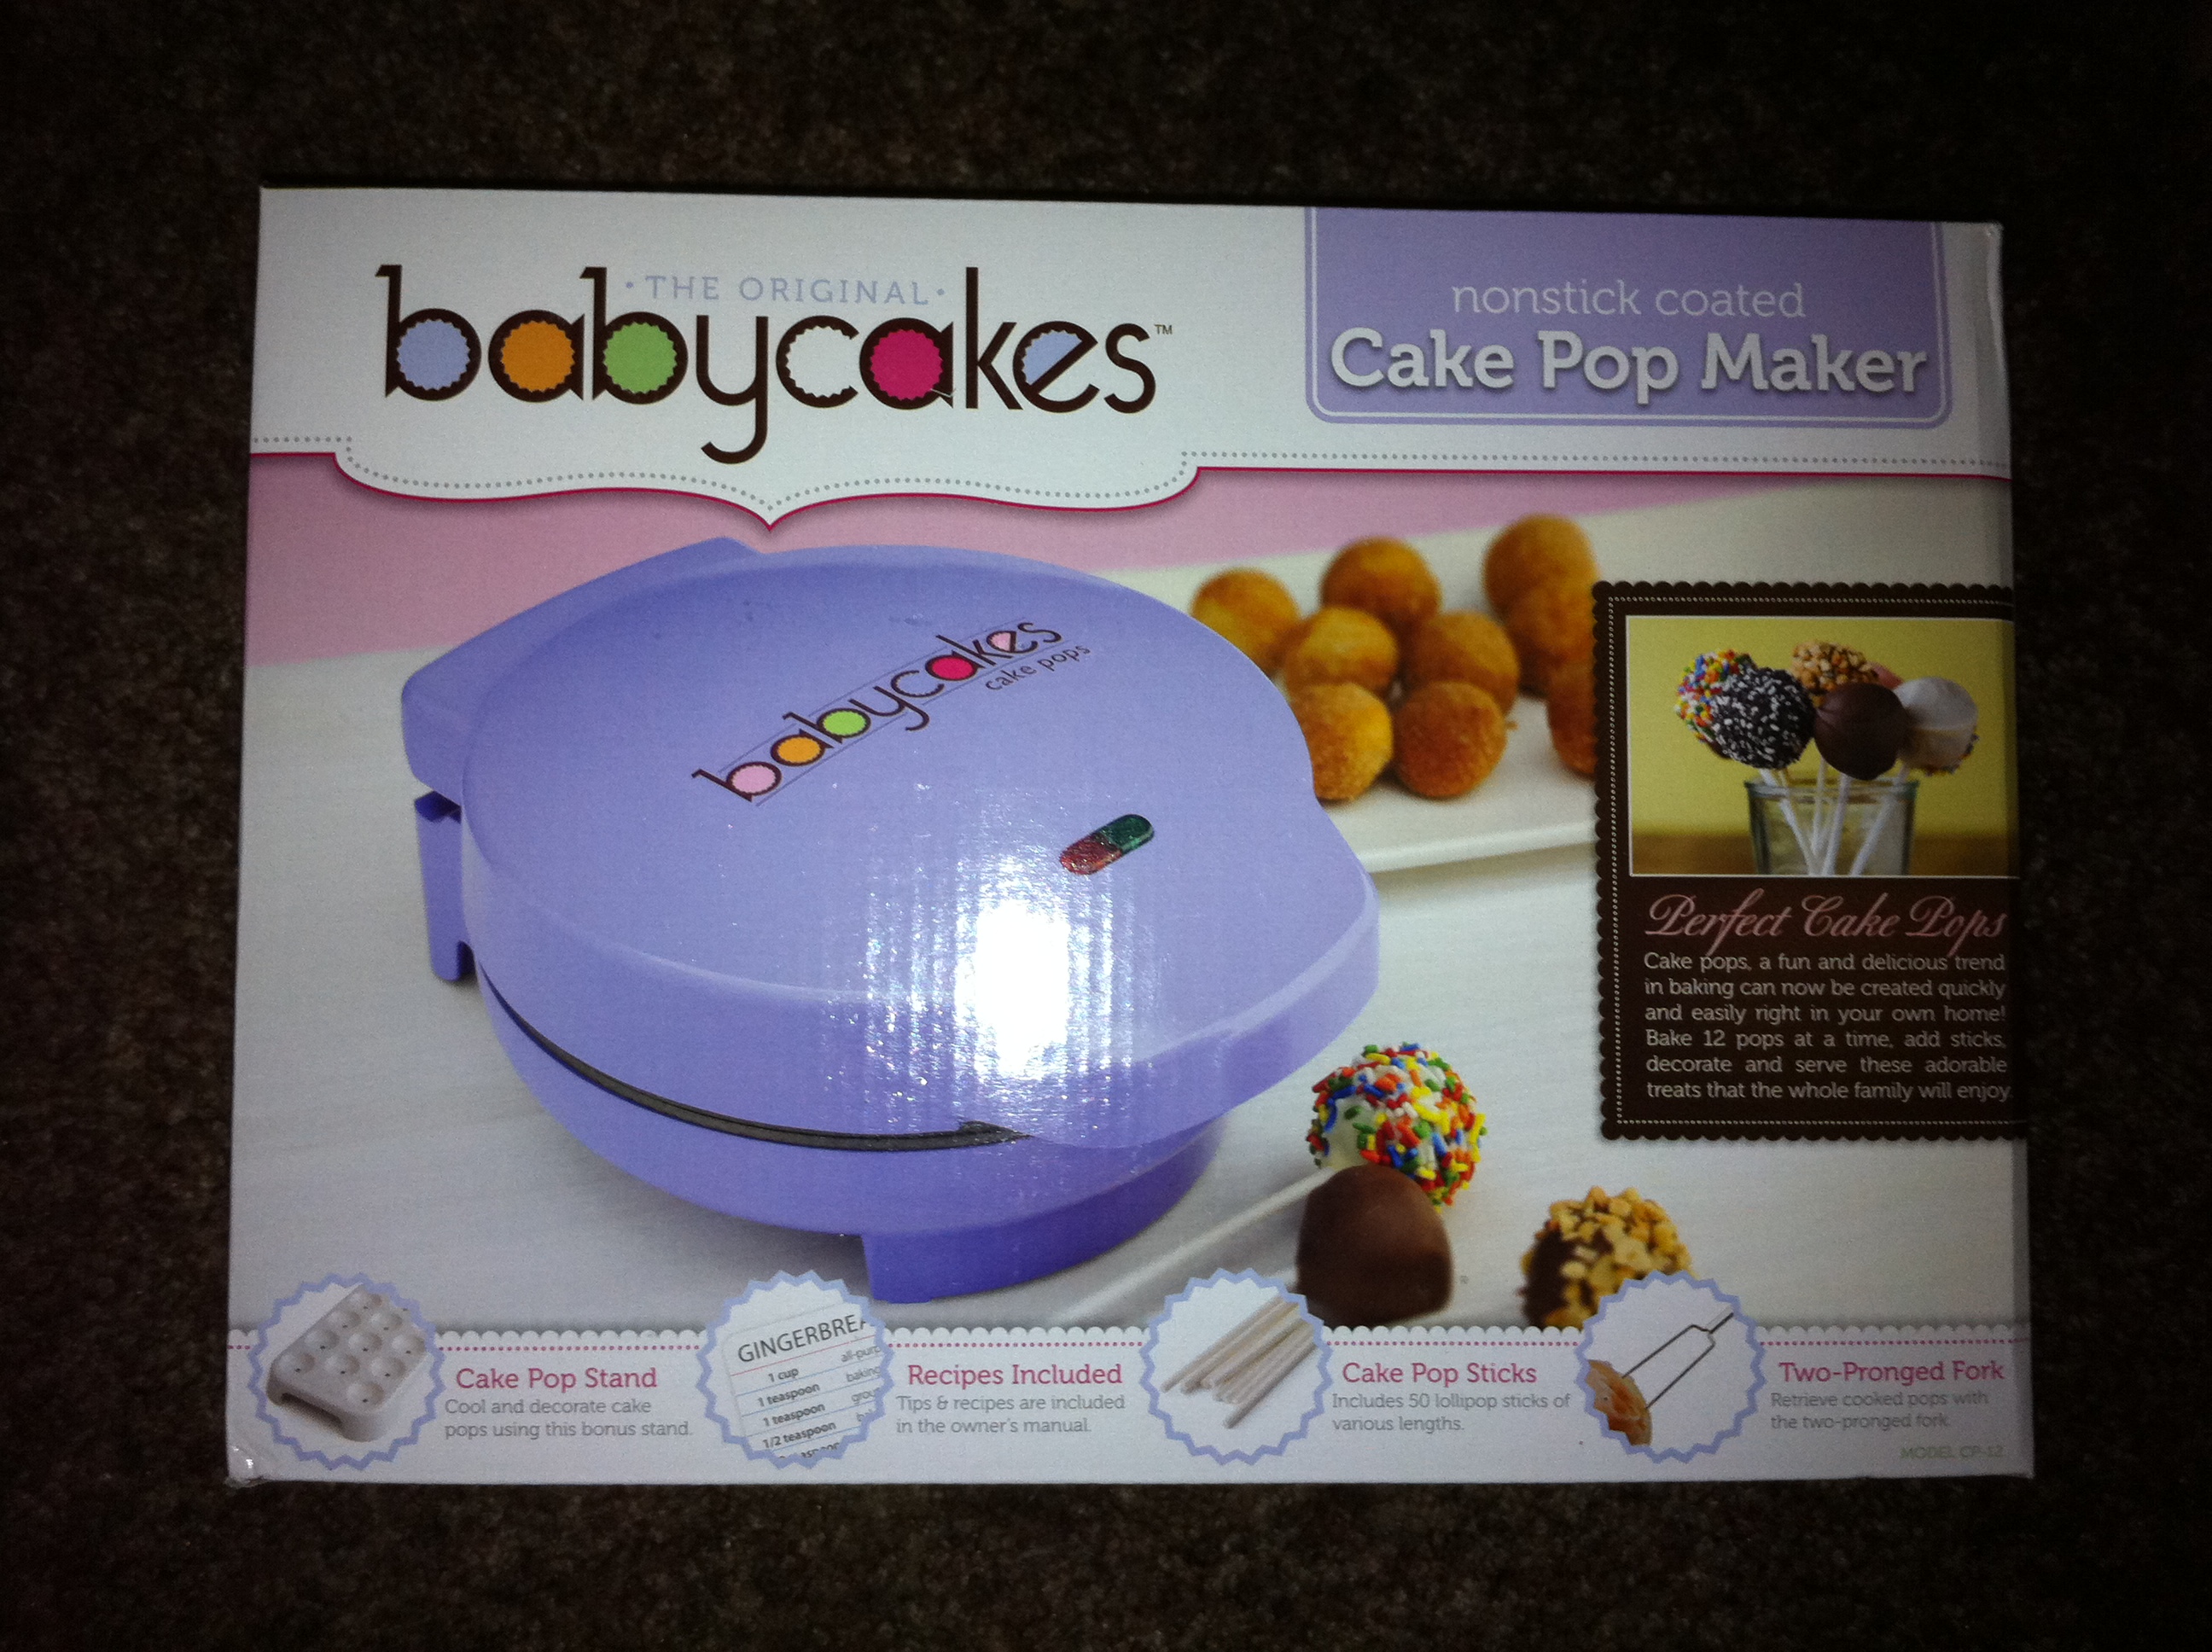 Babycakes Cake Pop Maker Review